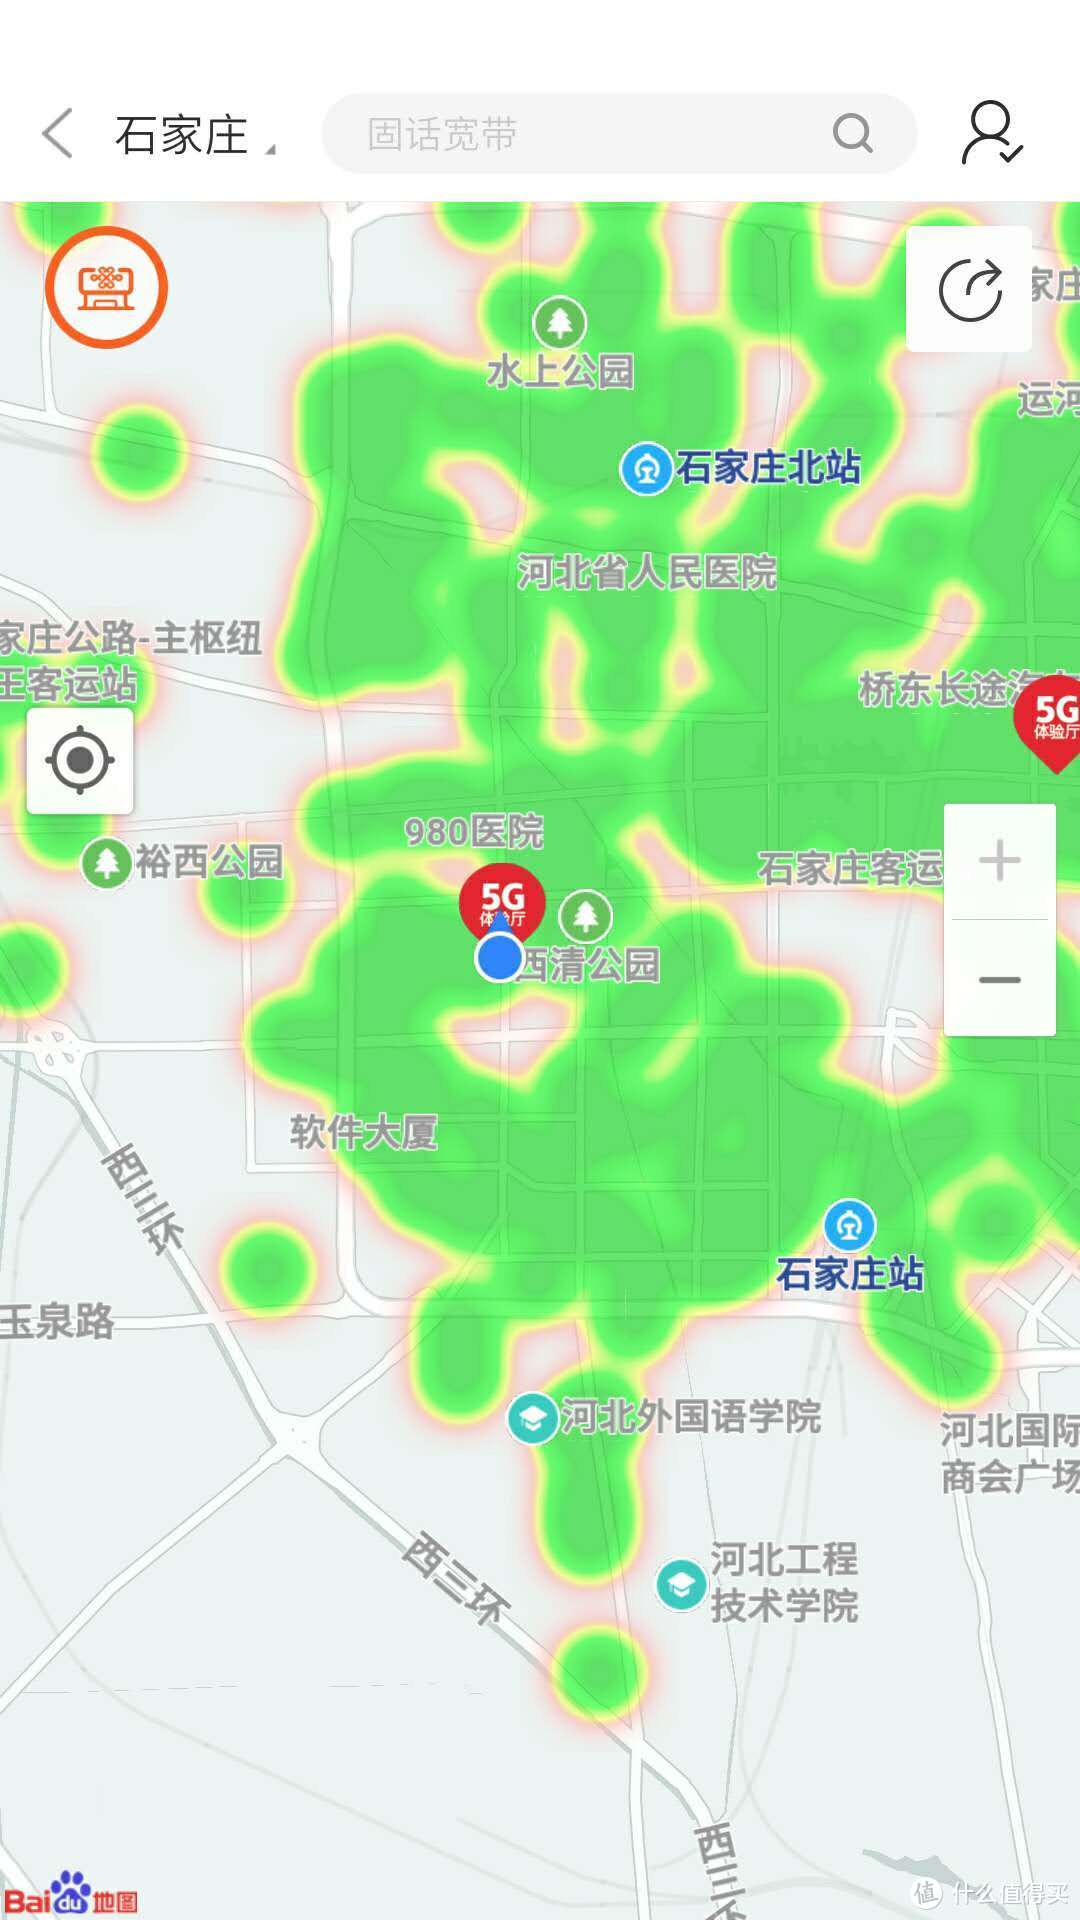 中国联通 5G 网络广度：从繁华都市到偏远乡村的全面覆盖  第3张